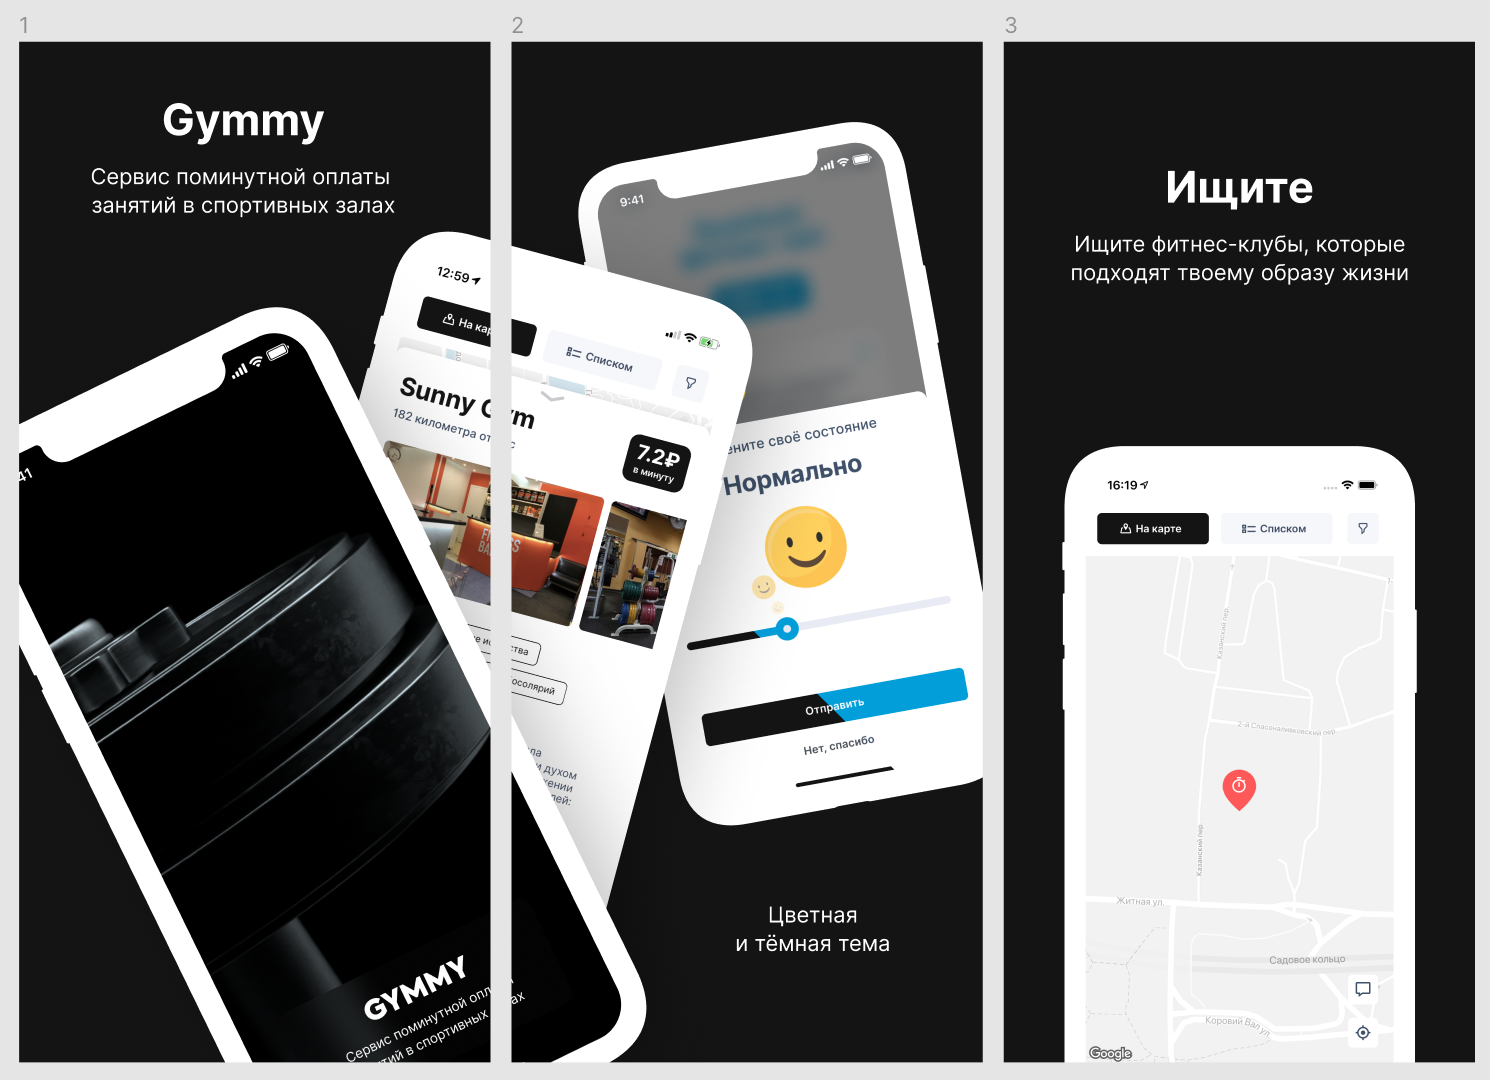 Вариант оформления Gymmy для App Store с темной темой